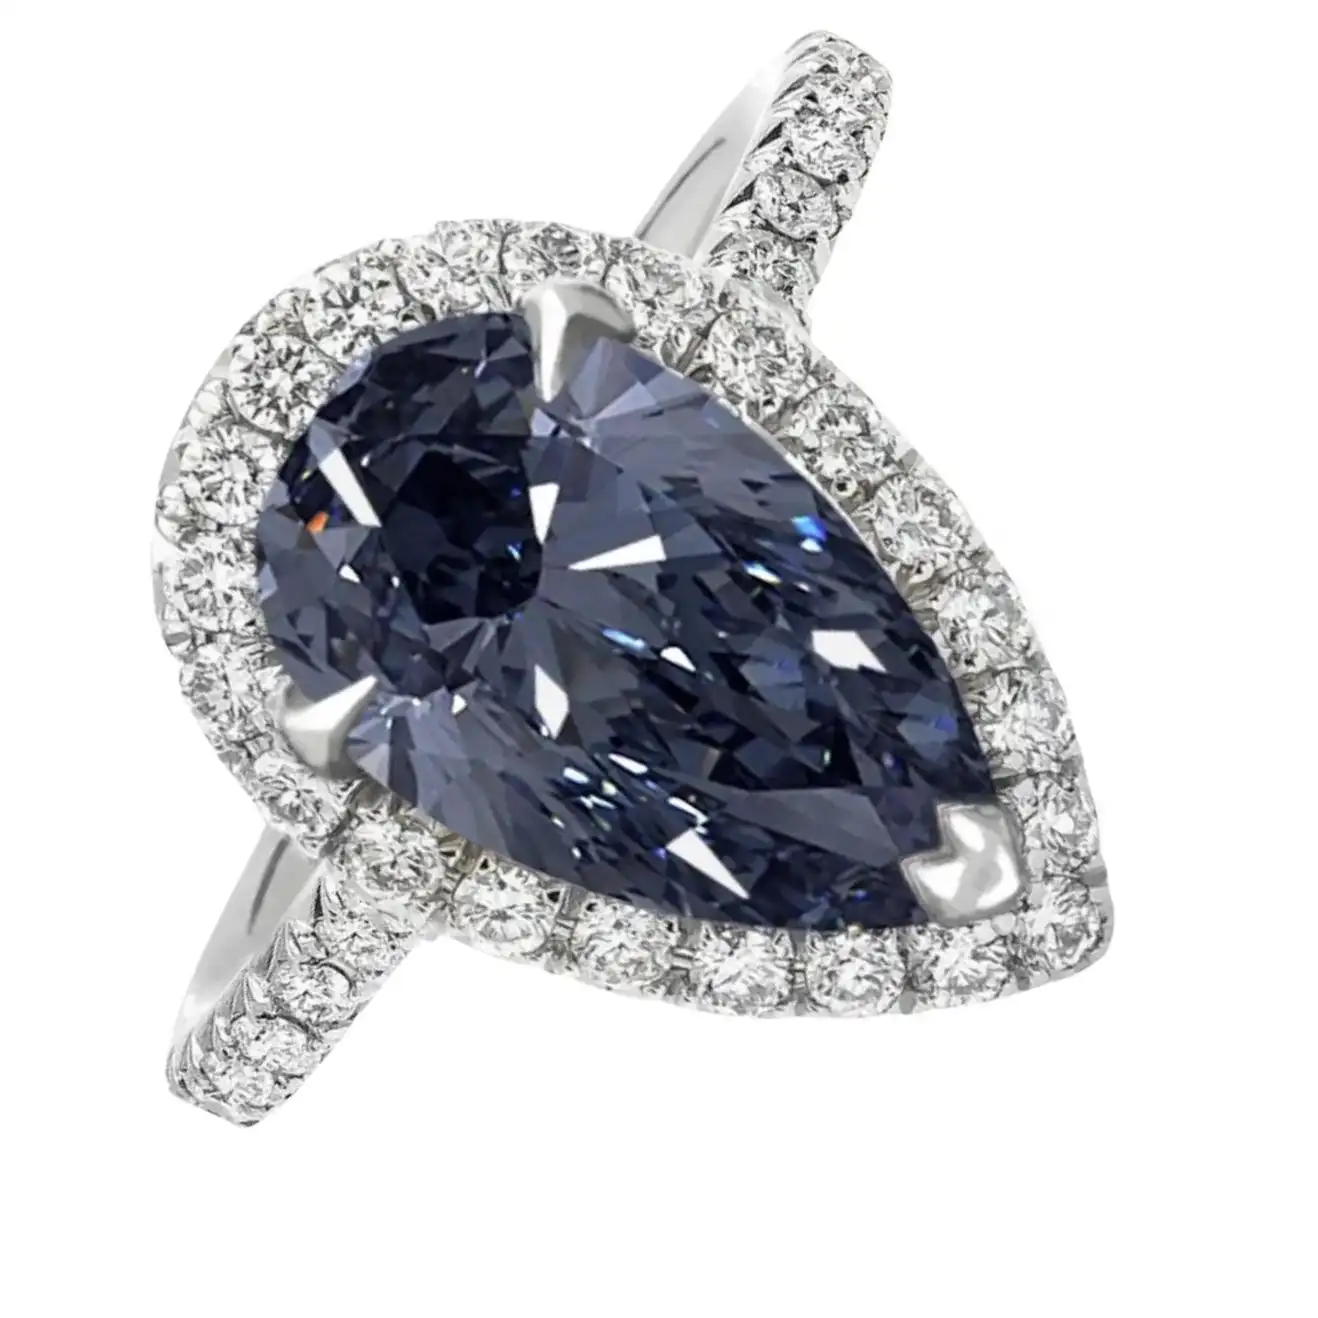 2-Carat-Fancy-Vivid-Blue-Diamond-VVS1-Exceptional-GIA-Certified-3.webp